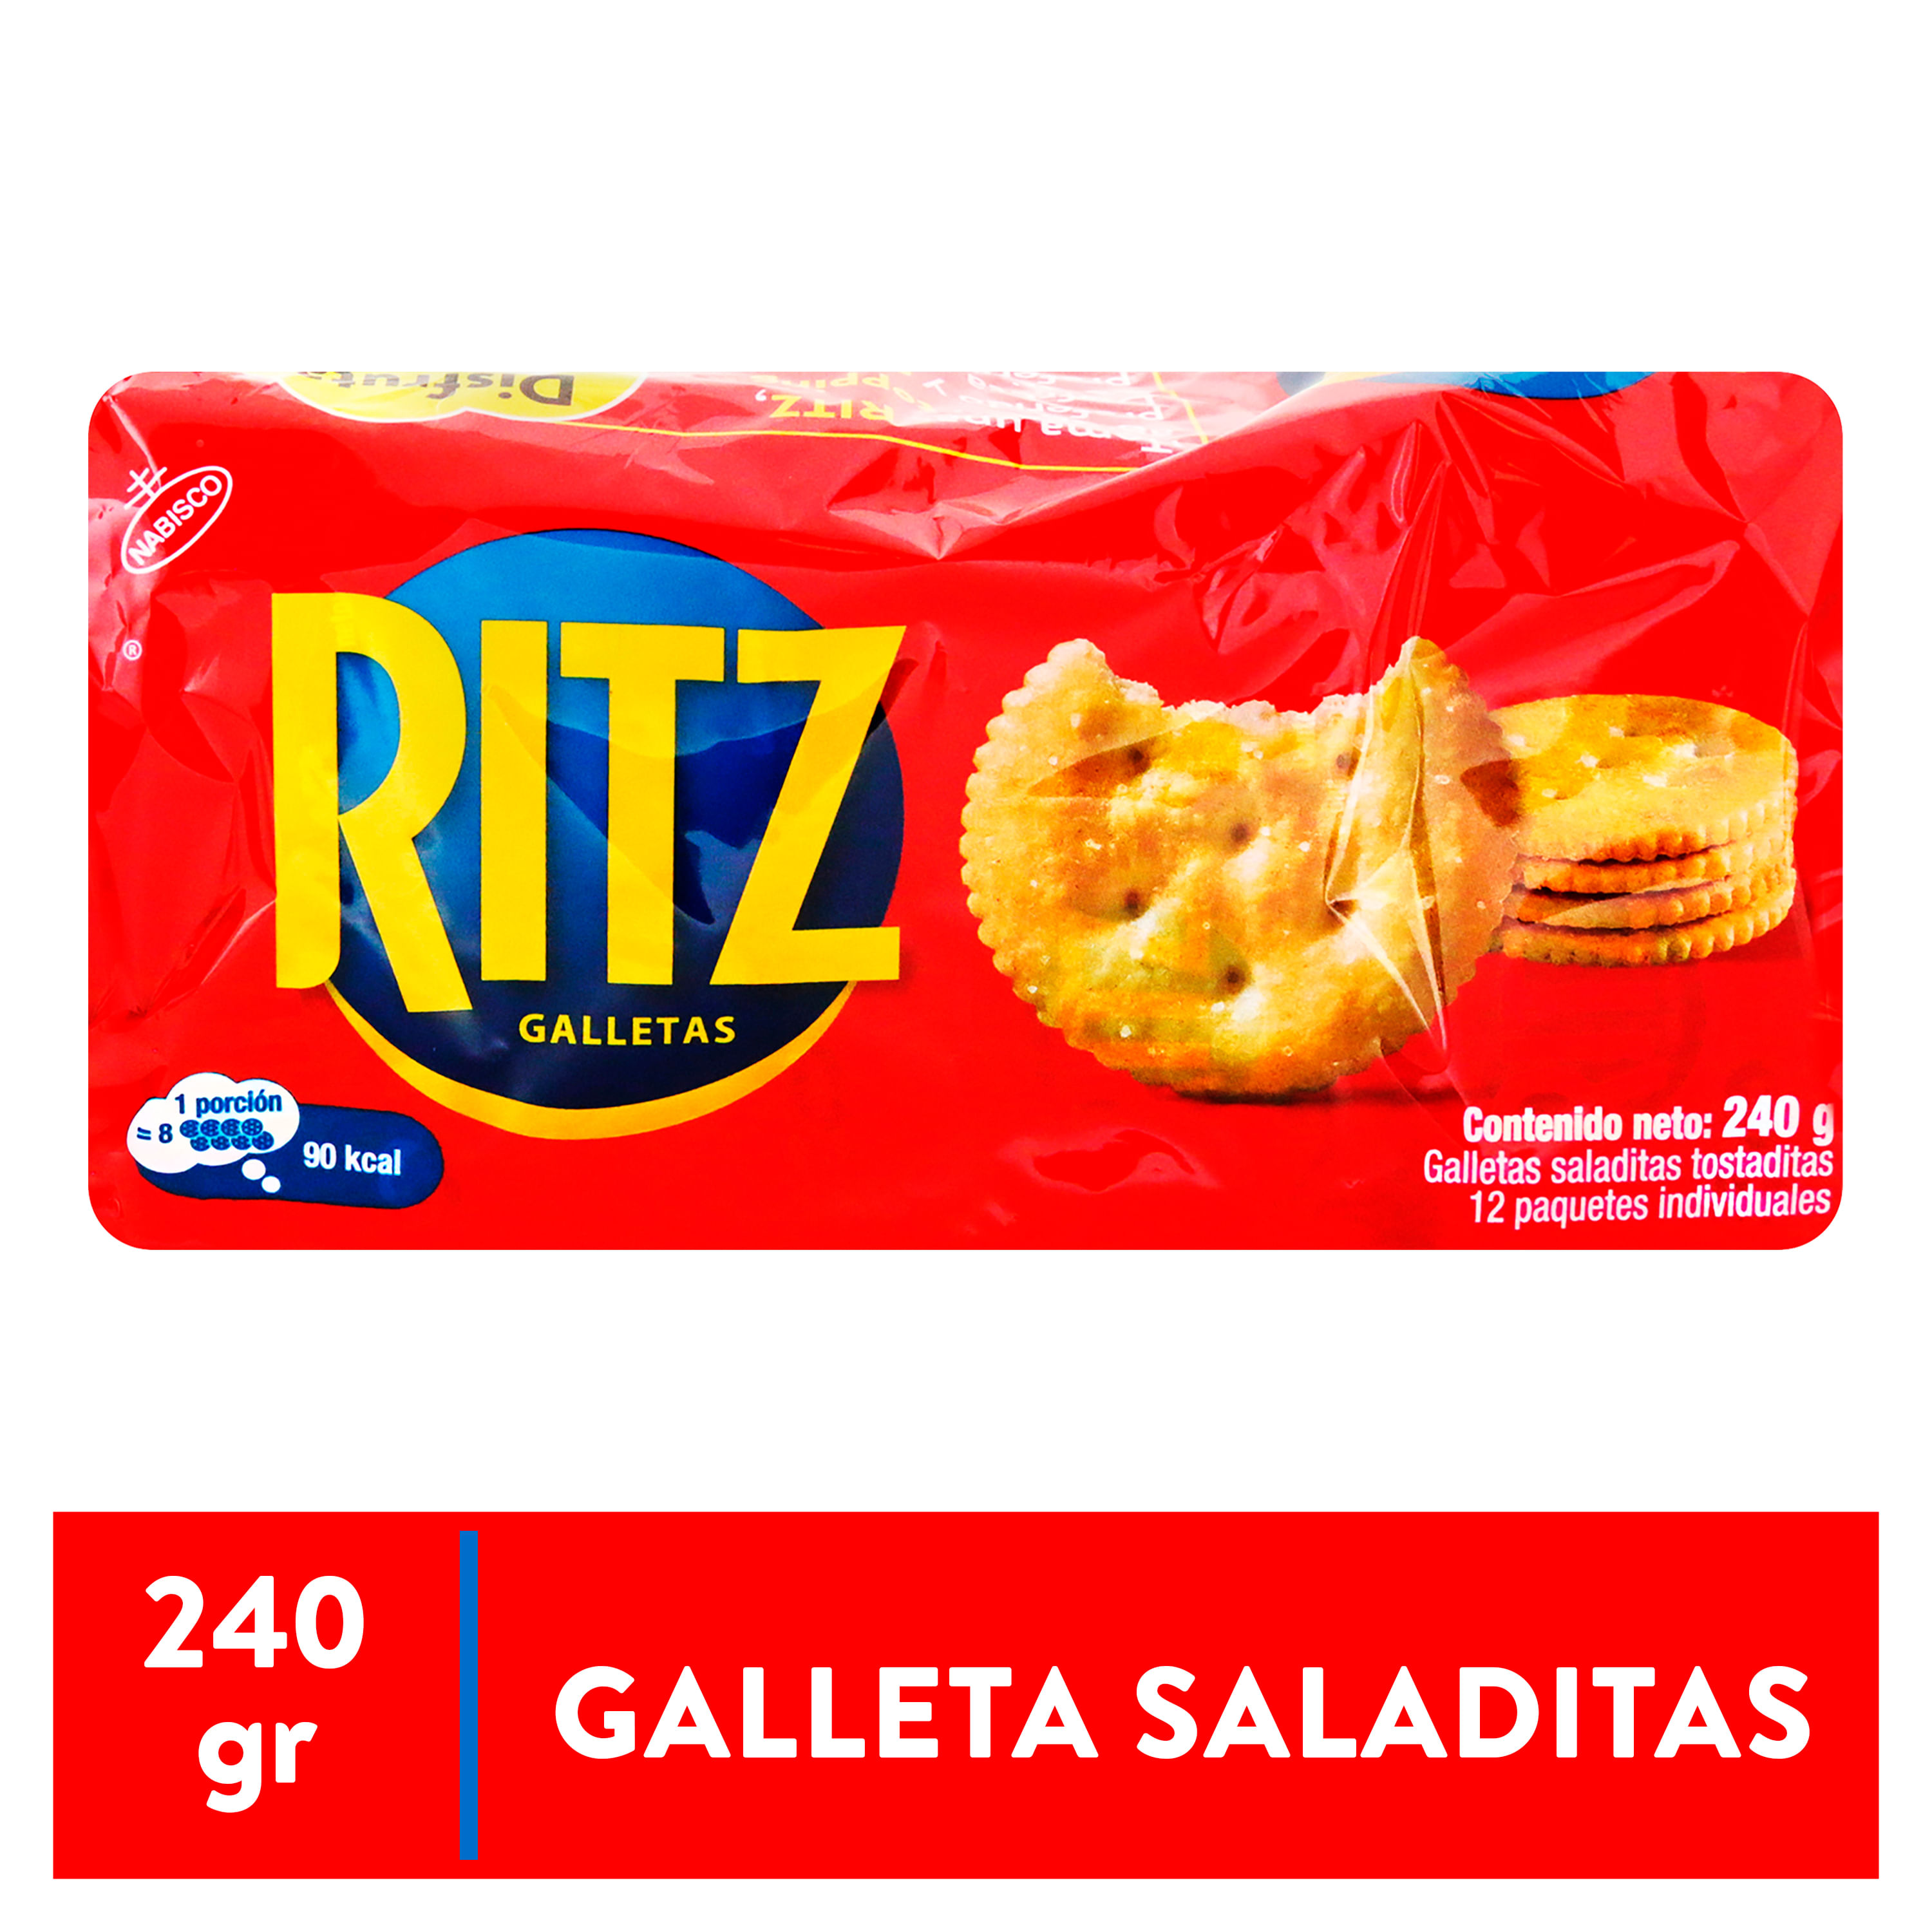 GALLETAS SALADAS tipo Ritz - sin gluten, sin maíz, sin lácteos